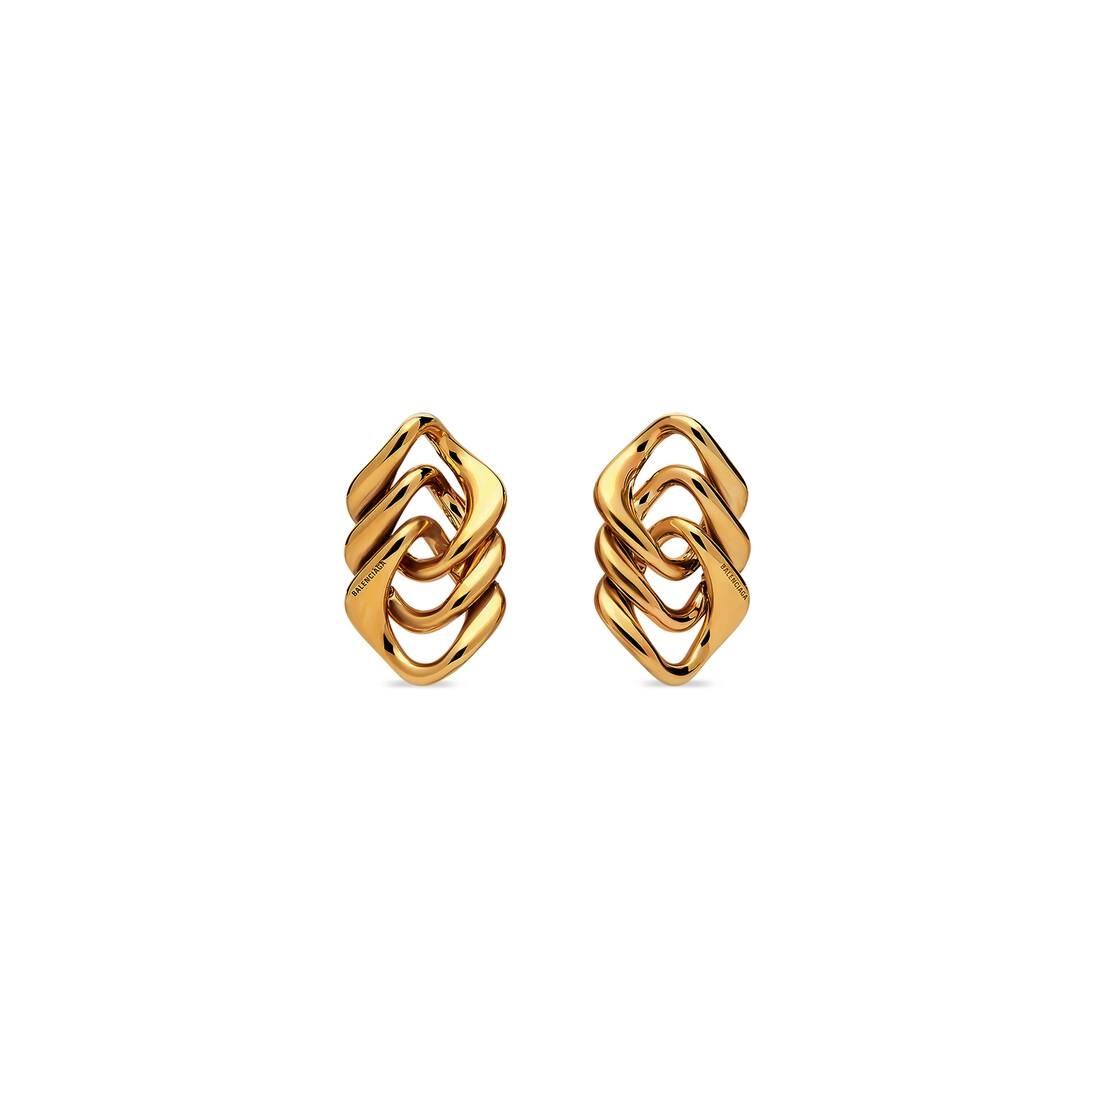 Women's Linked Earrings in Gold - 1